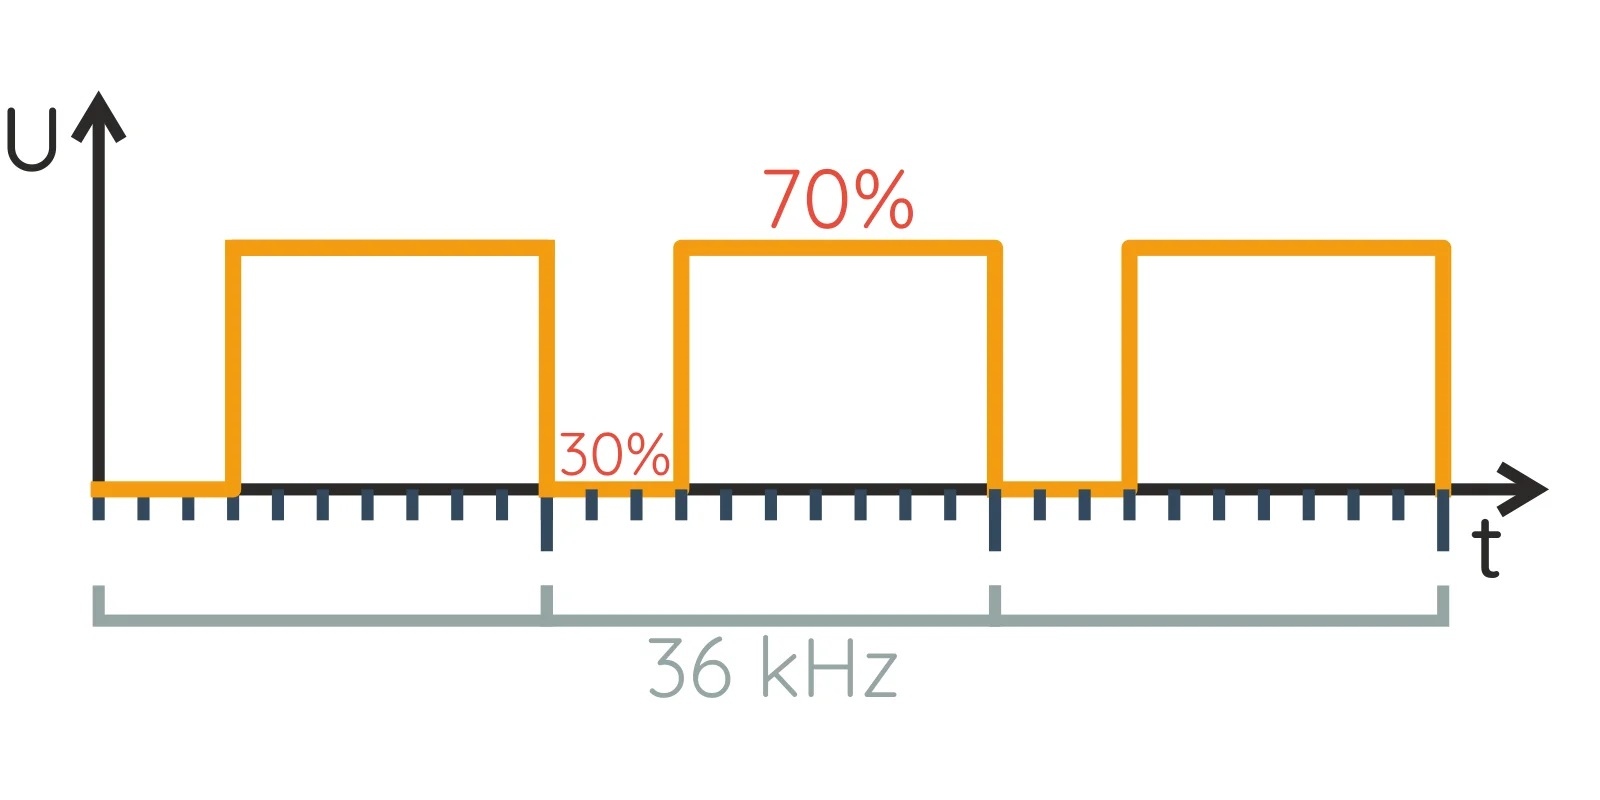 ИК-диод будет светиться только 30% времени